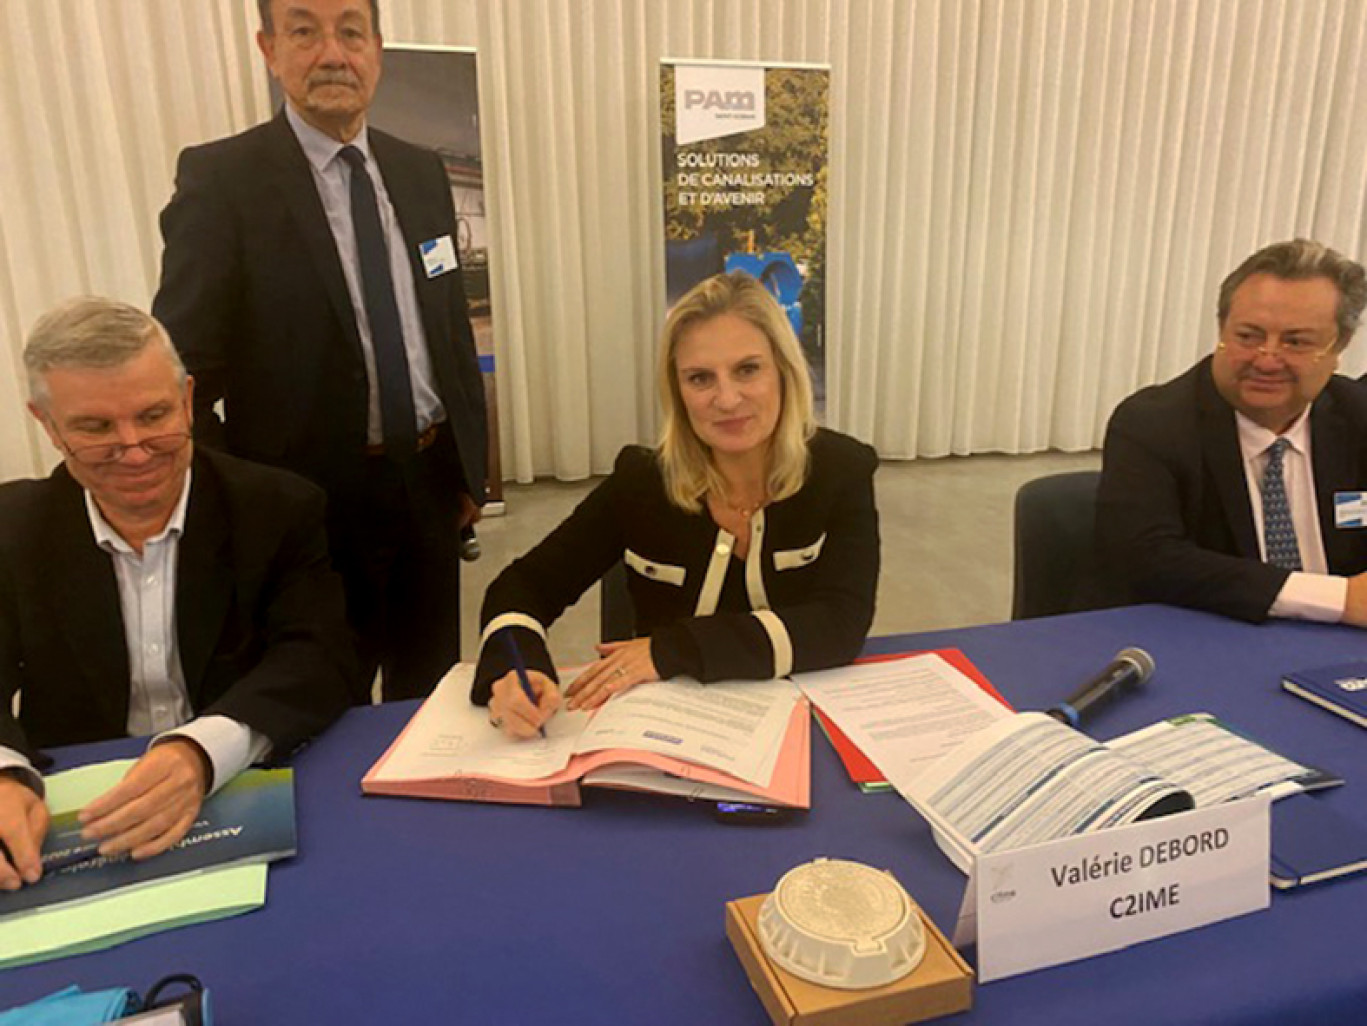  A l’occasion de son AG le 18 novembre, le C2IME, présidé par Valérie Debord a signé une convention de partenariat avec Saint-Gobain PAM. 